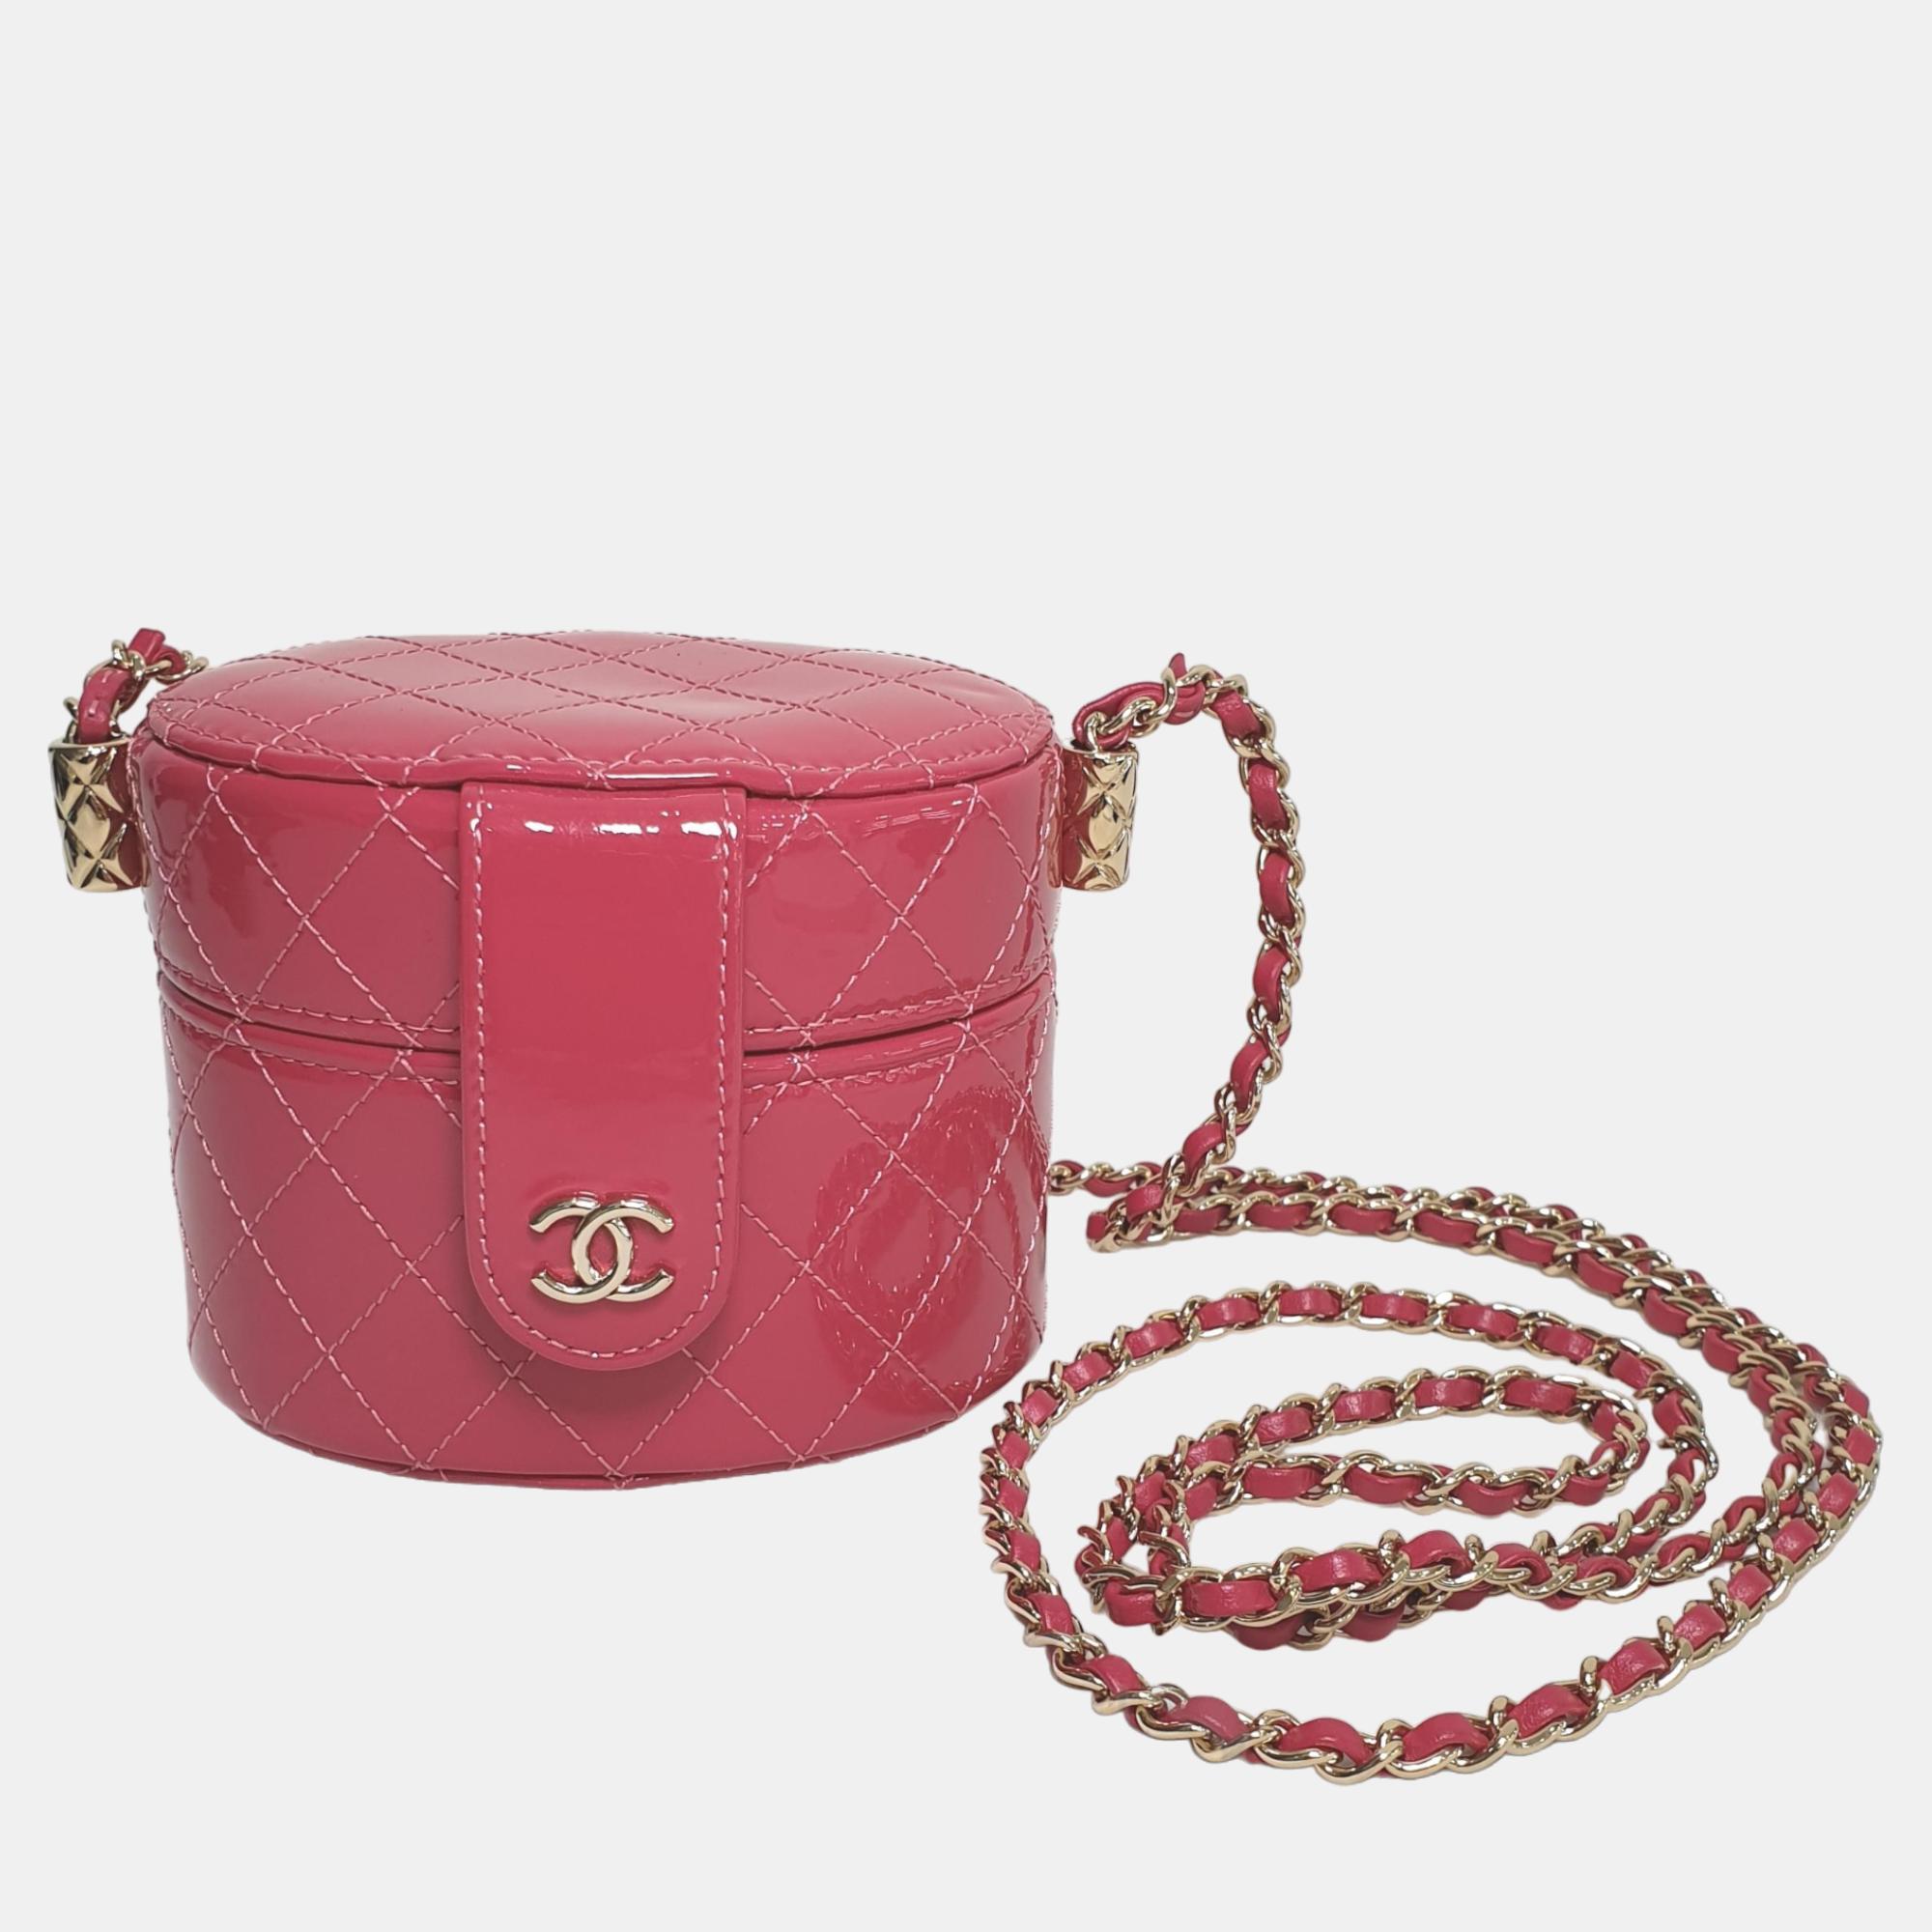 Chanel pink patent leather mini vanity case shoulder bag